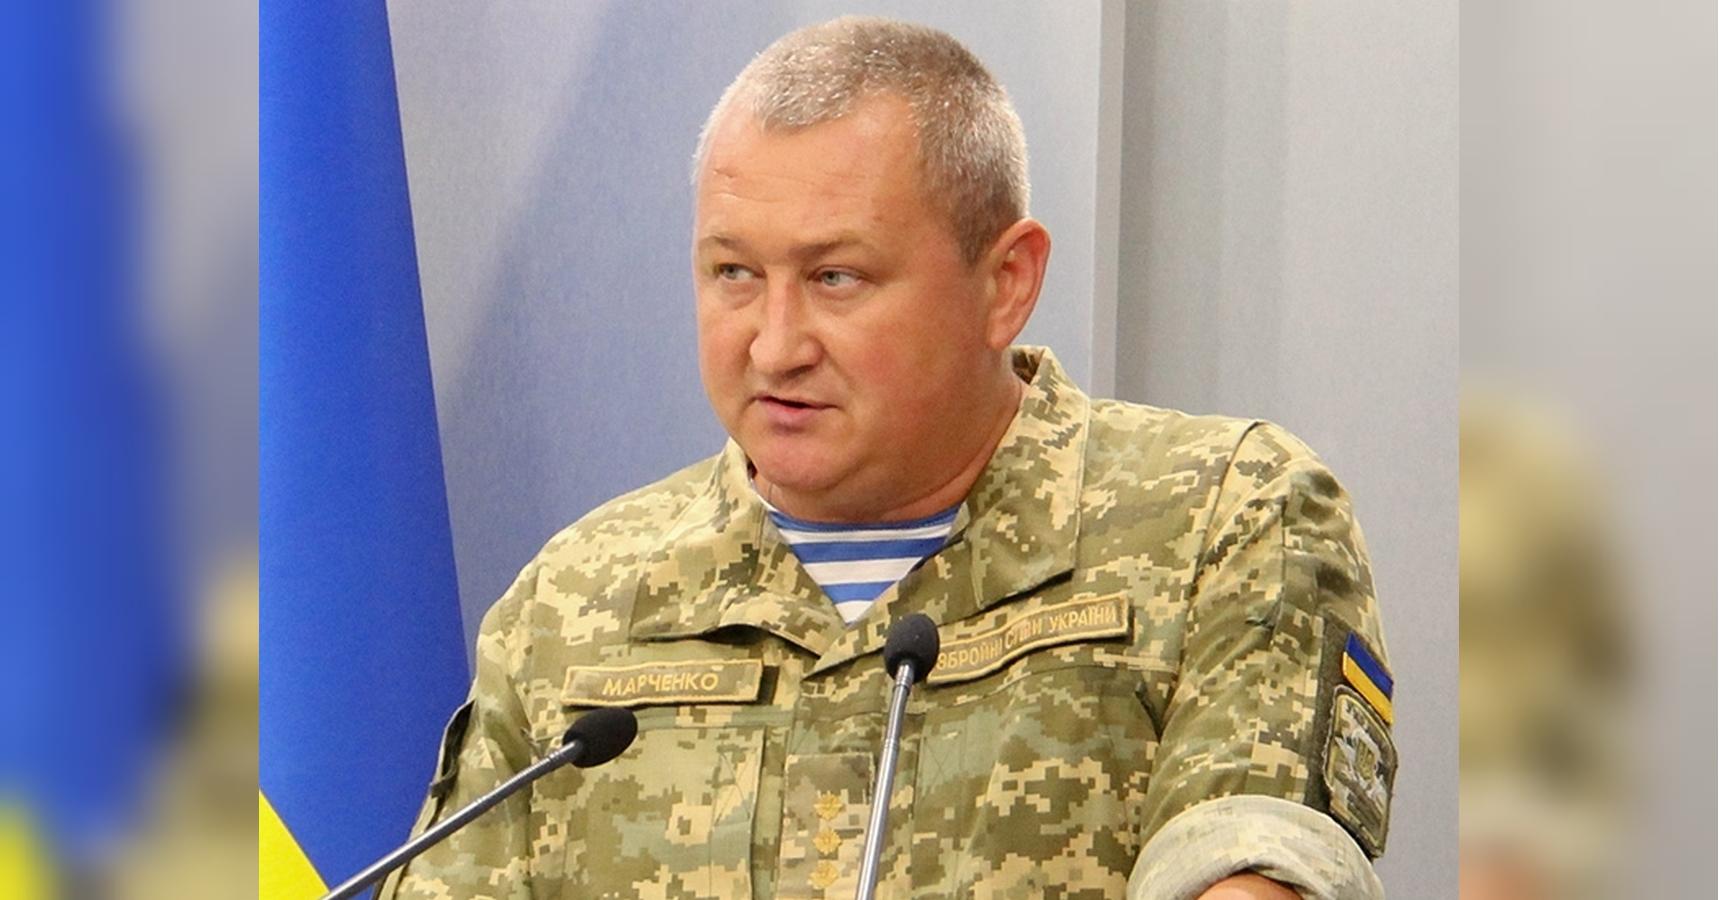 Семья Петра Порошенко внесла 19 млн грн залога за генерала Марченко: 1 млн собрали украинцы